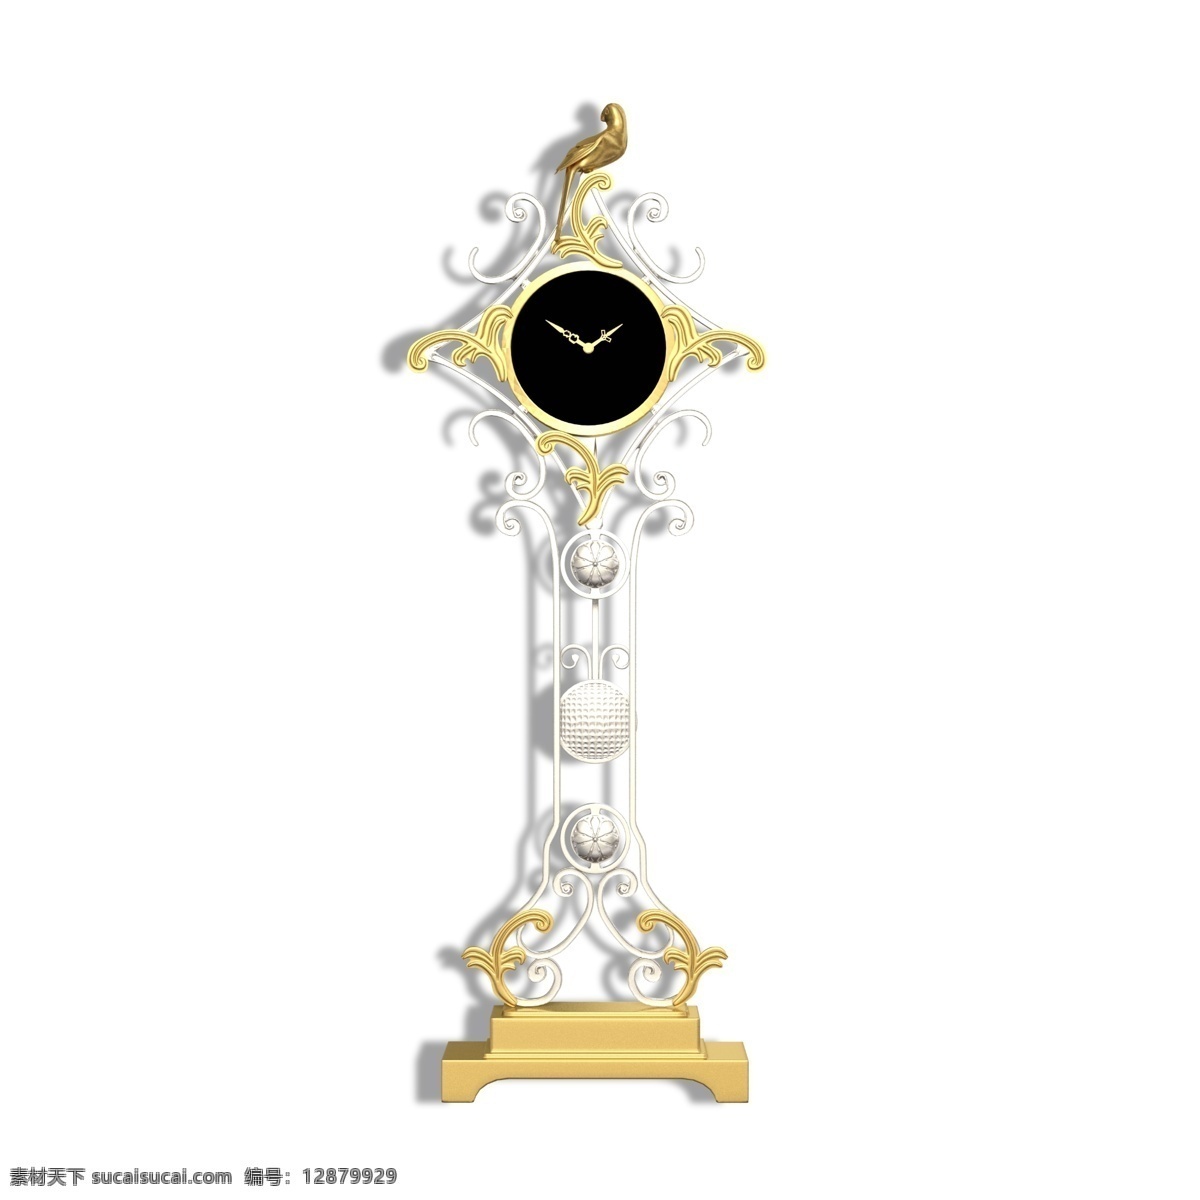 好看 欧式 金属 钟表 好看的 金属钟表 钟 表 计时 时间 欧式钟表 台式钟表 欧式钟 奢华 华丽